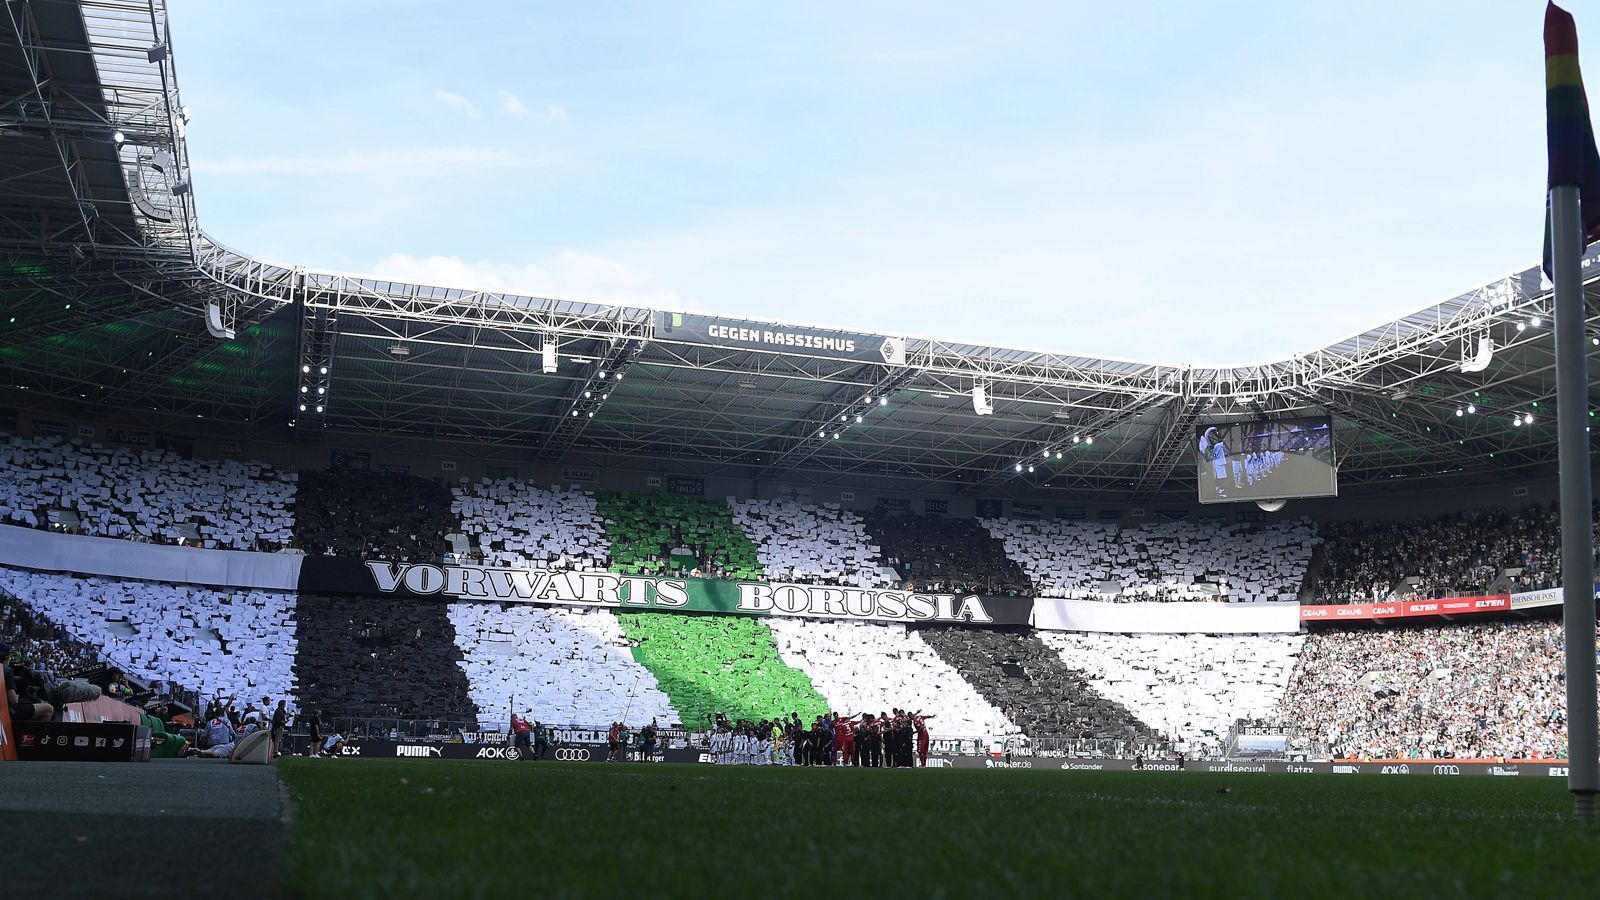 
                <strong>Platz 19: Borussia Mönchengladbach - Stadion im Borussia-Park</strong><br>
                &#x2022; Zuschauerschnitt: 52.438<br>&#x2022; Zuschauer gesamt: 891.440<br>&#x2022; Kapazität: 54.042<br>&#x2022; Durchschnittliche Auslastung: 97,0 %<br>&#x2022; Heimspiele: 17<br>&#x2022; Ausverkaufte Spiele: 4<br>
              